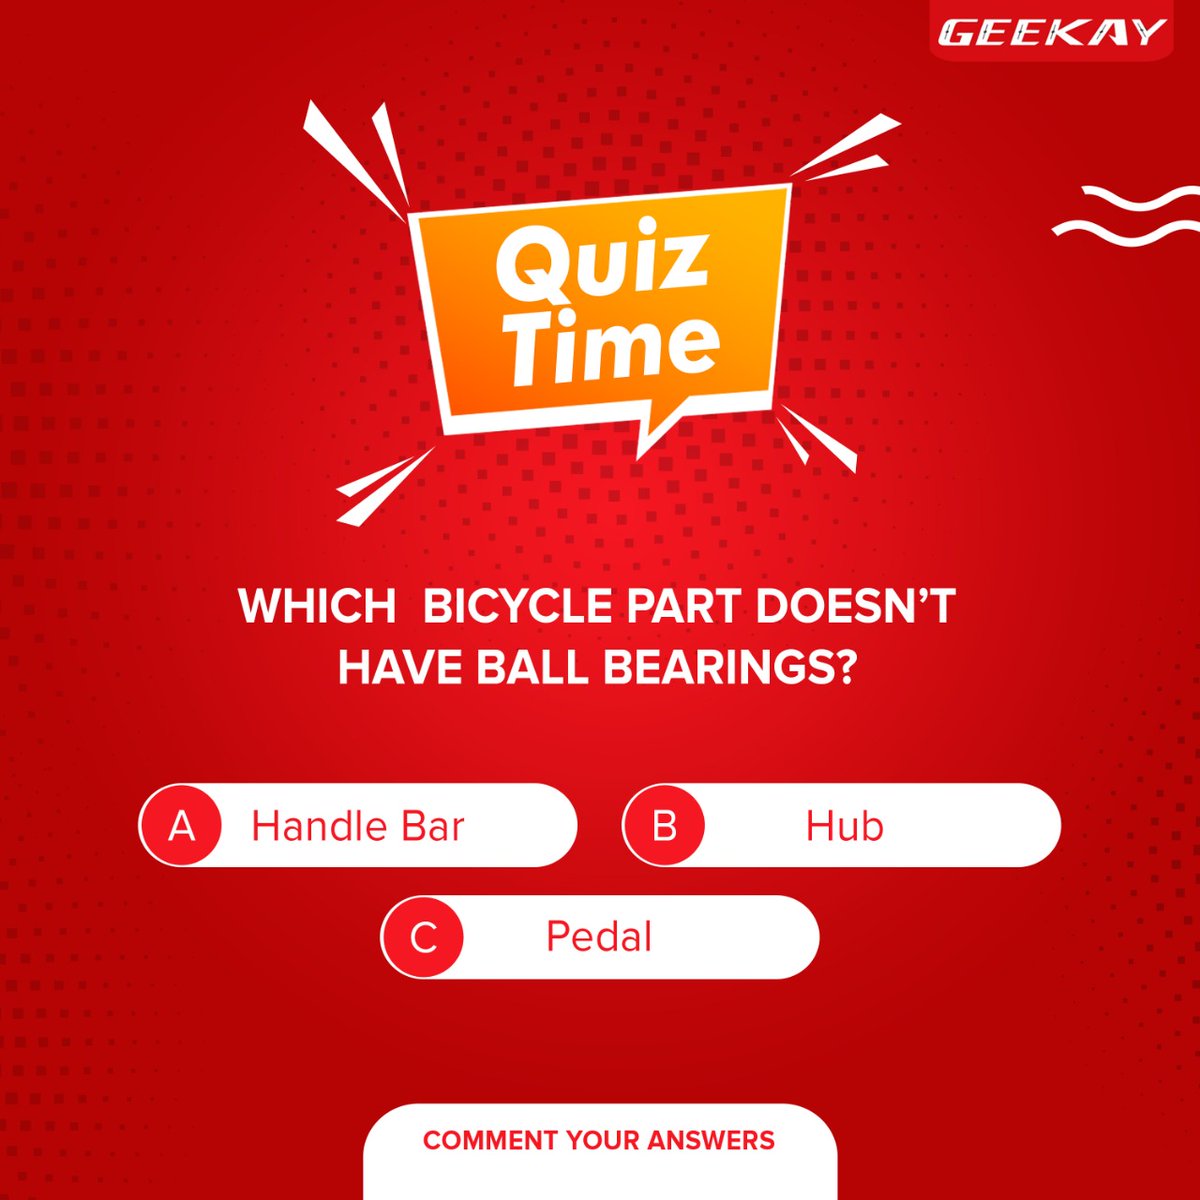 Time to Think

#geekaybikes #geekay
#quiz #cyclequiz #bikequiz #Cyclequiz #cyclingquiz #quizday #QuizDay #quiz #Quiz #QuizTime #mondaythoughts #Trivia #ContestAlert #quiz